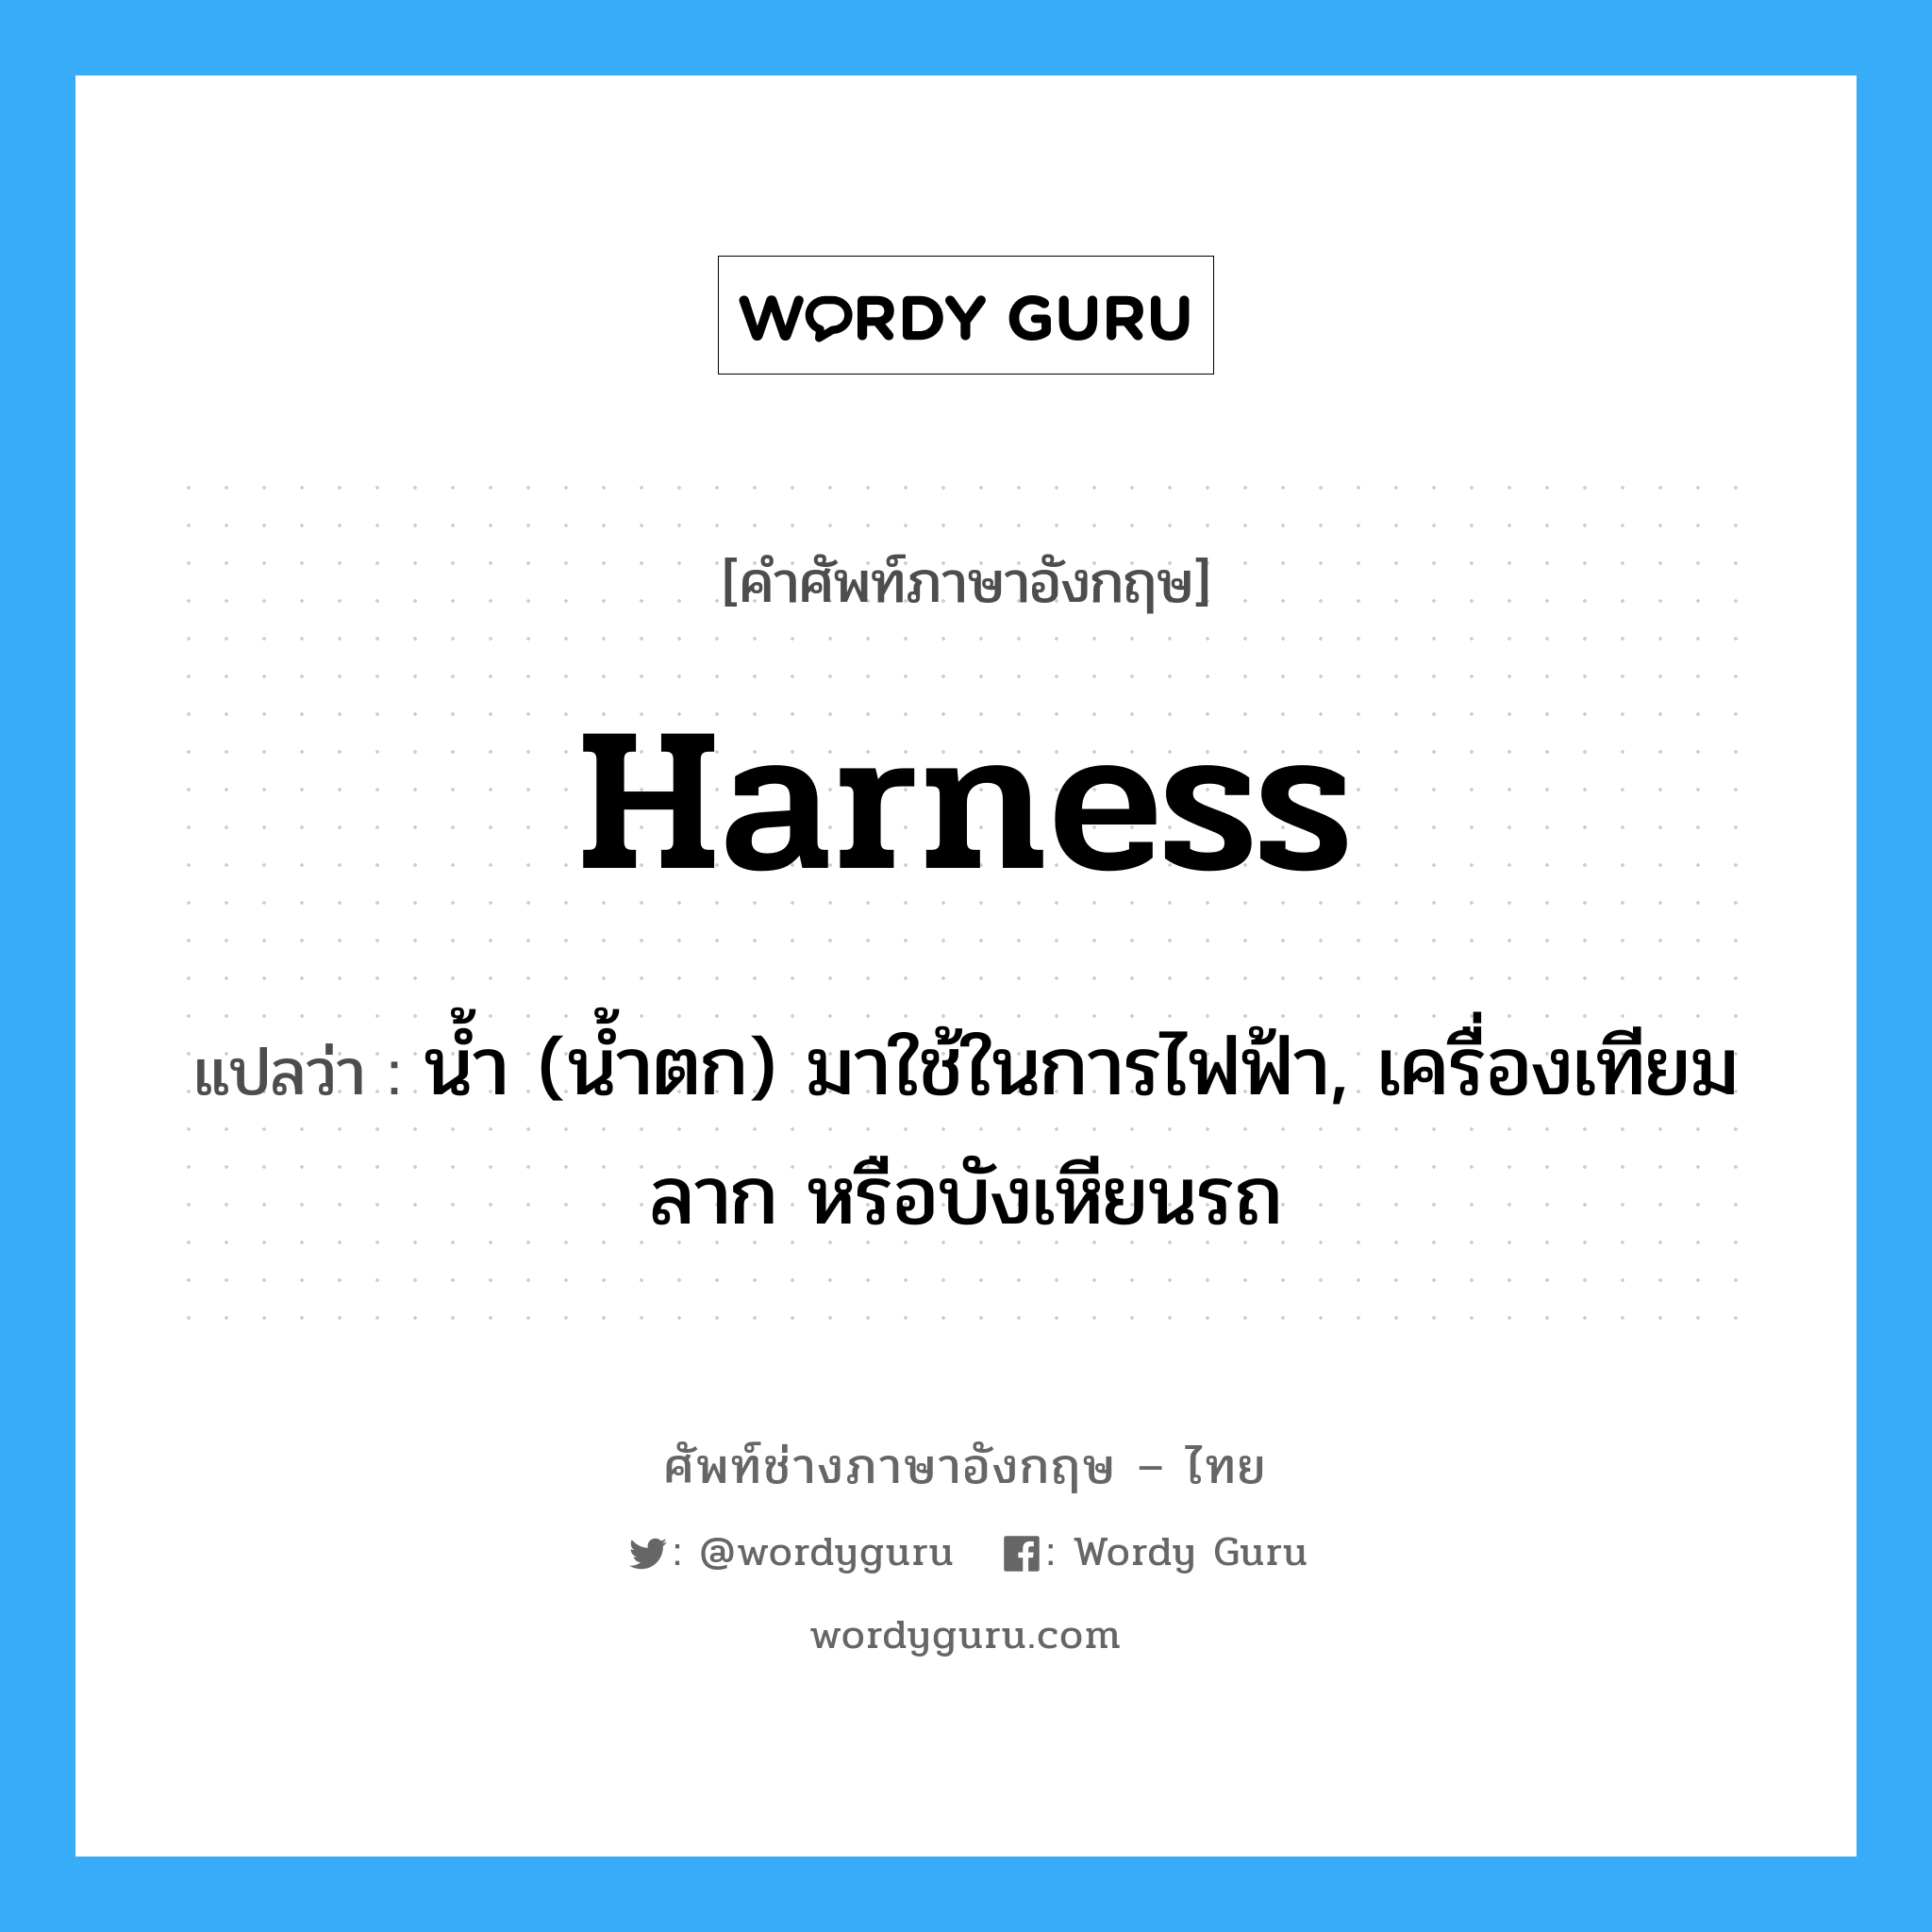 harness แปลว่า?, คำศัพท์ช่างภาษาอังกฤษ - ไทย harness คำศัพท์ภาษาอังกฤษ harness แปลว่า น้ำ (น้ำตก) มาใช้ในการไฟฟ้า, เครื่องเทียมลาก หรือบังเหียนรถ